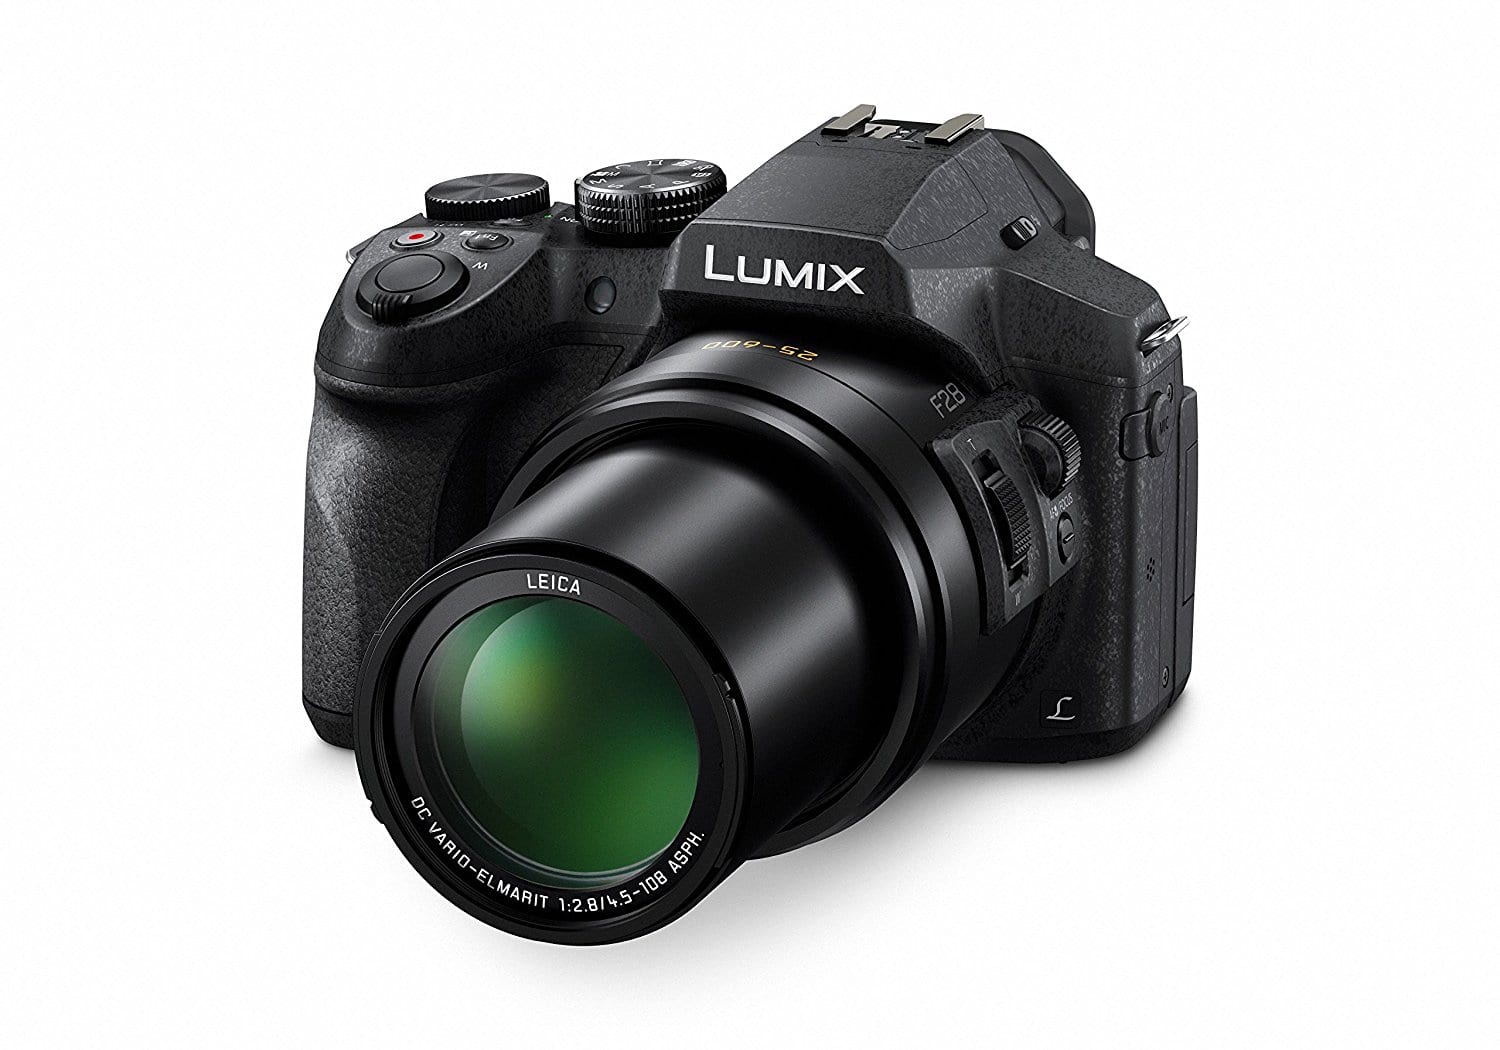 Meilleur appareil photo bridge N°5 : Le Panasonic Lumix FZ300 / FZ330